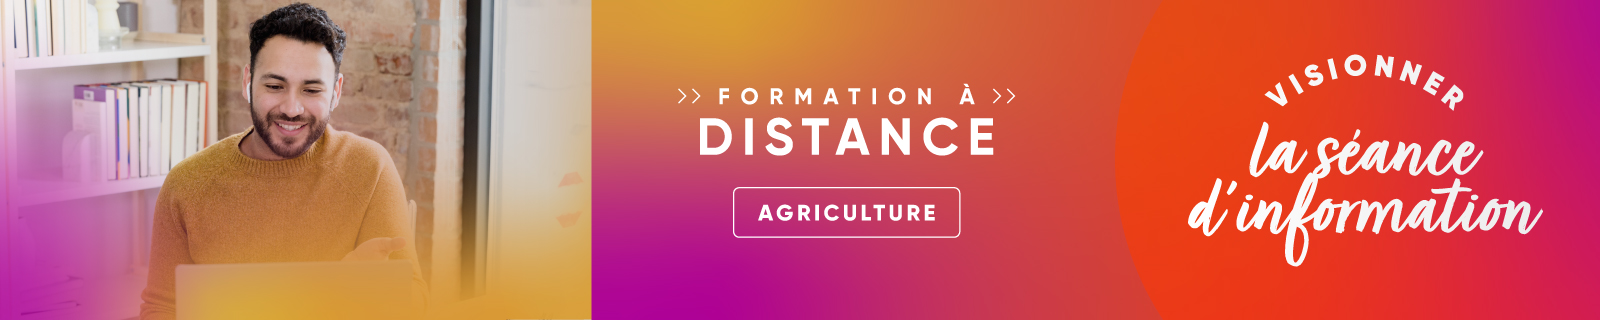 Séance d'information - Formation à distance - Agriculture